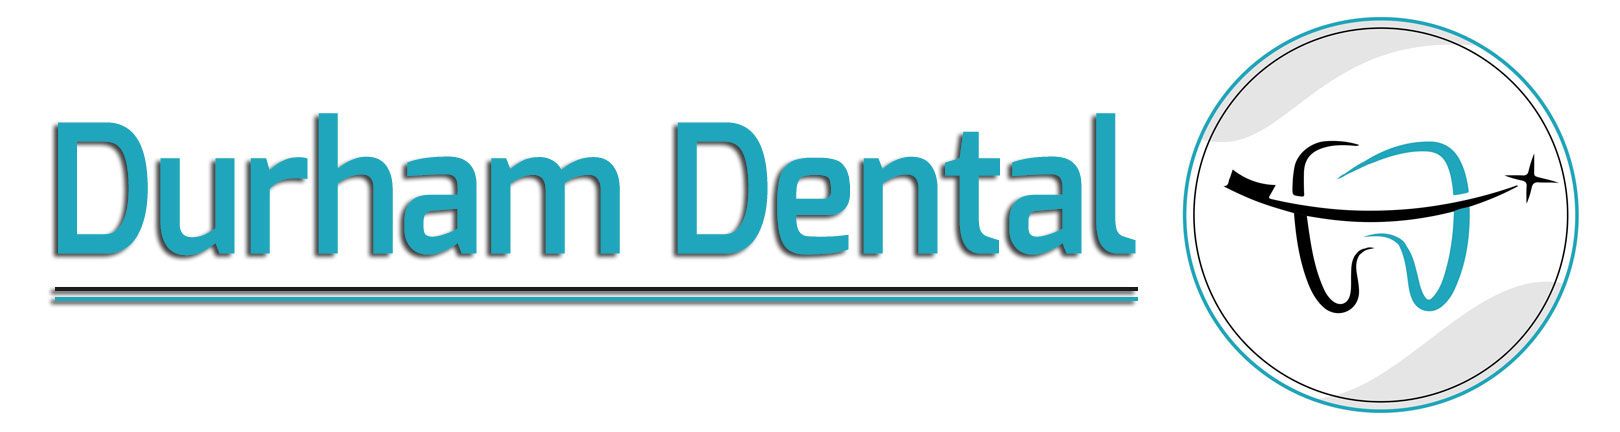 Durham Dental - Logo